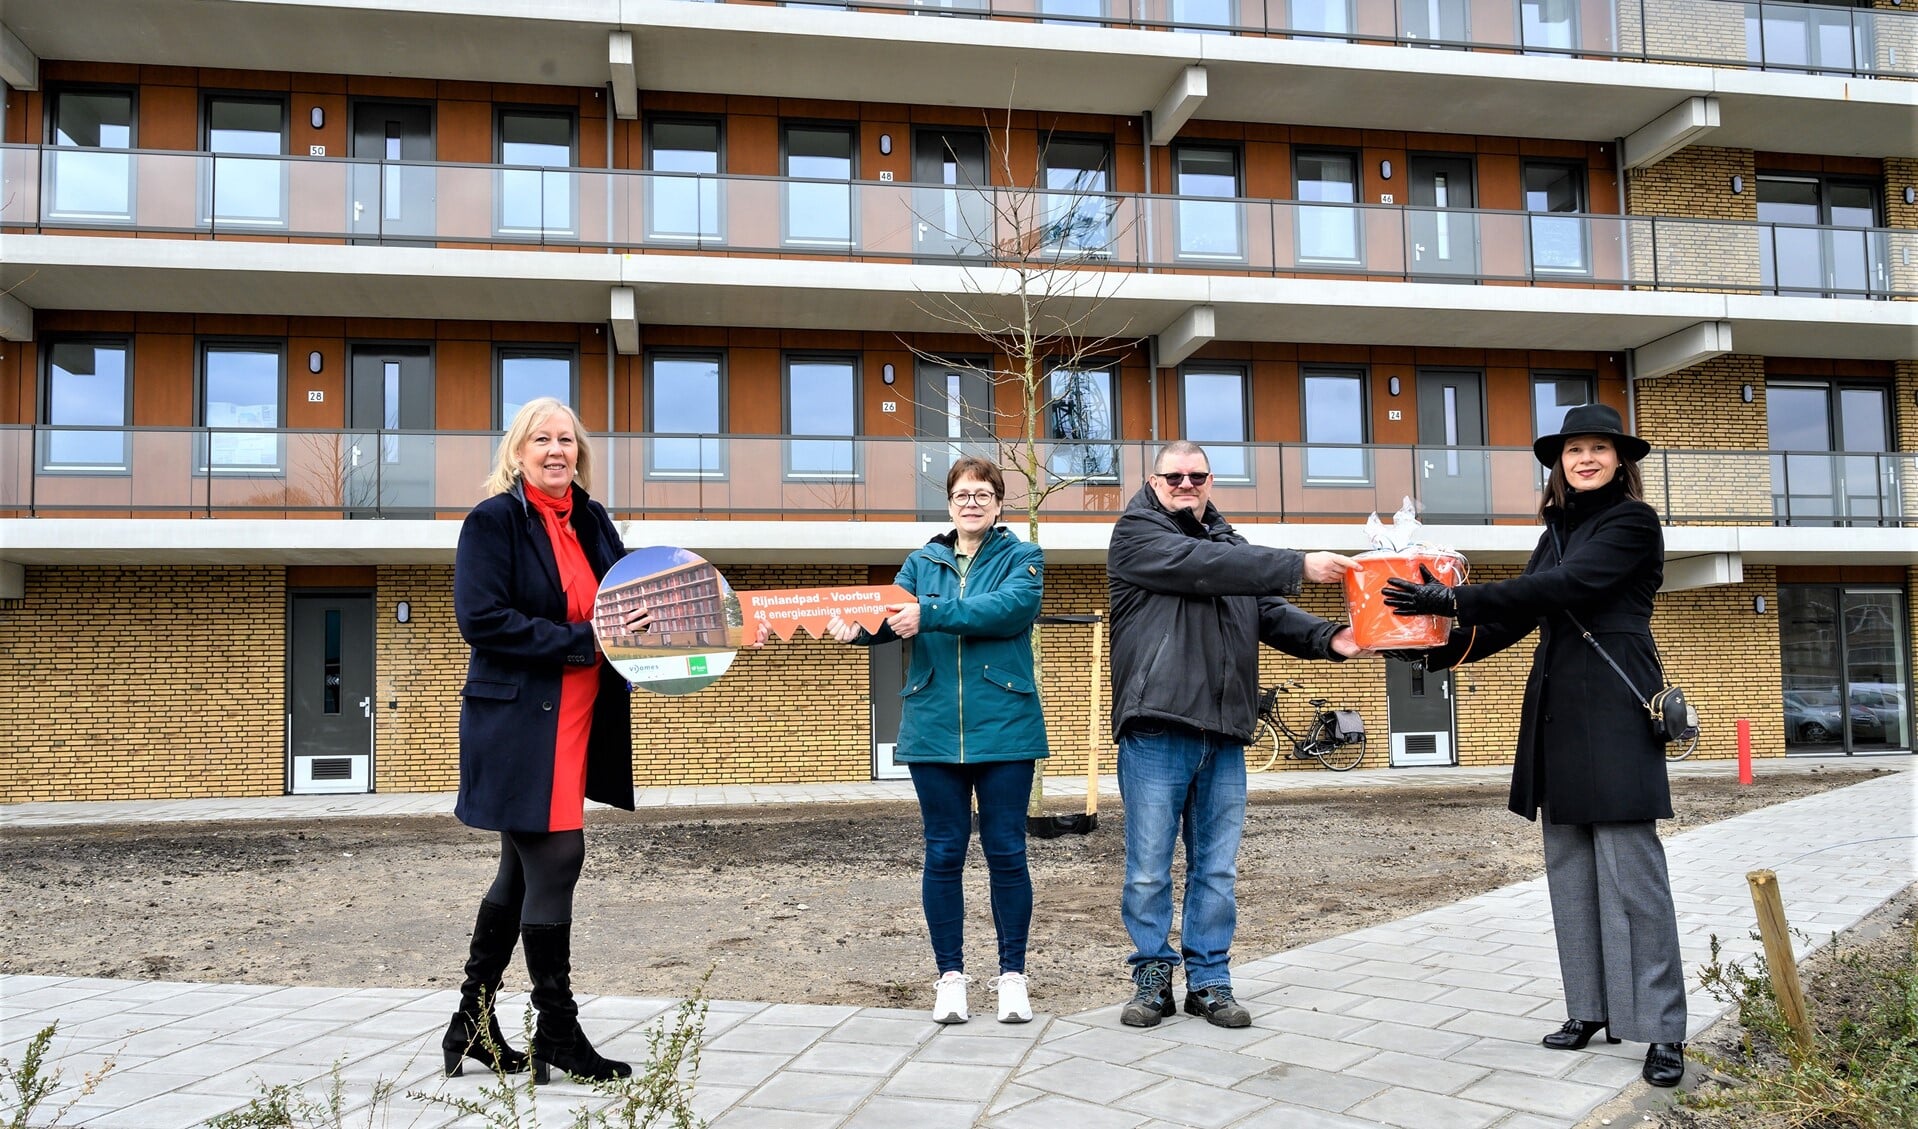 Symbolisch overhandigden wethouder Astrid van Eekelen en Vidomes bestuurder Daphne Braal de eerste sleutel aan de bewoners (foto: Rene Verleg/Vidomes).